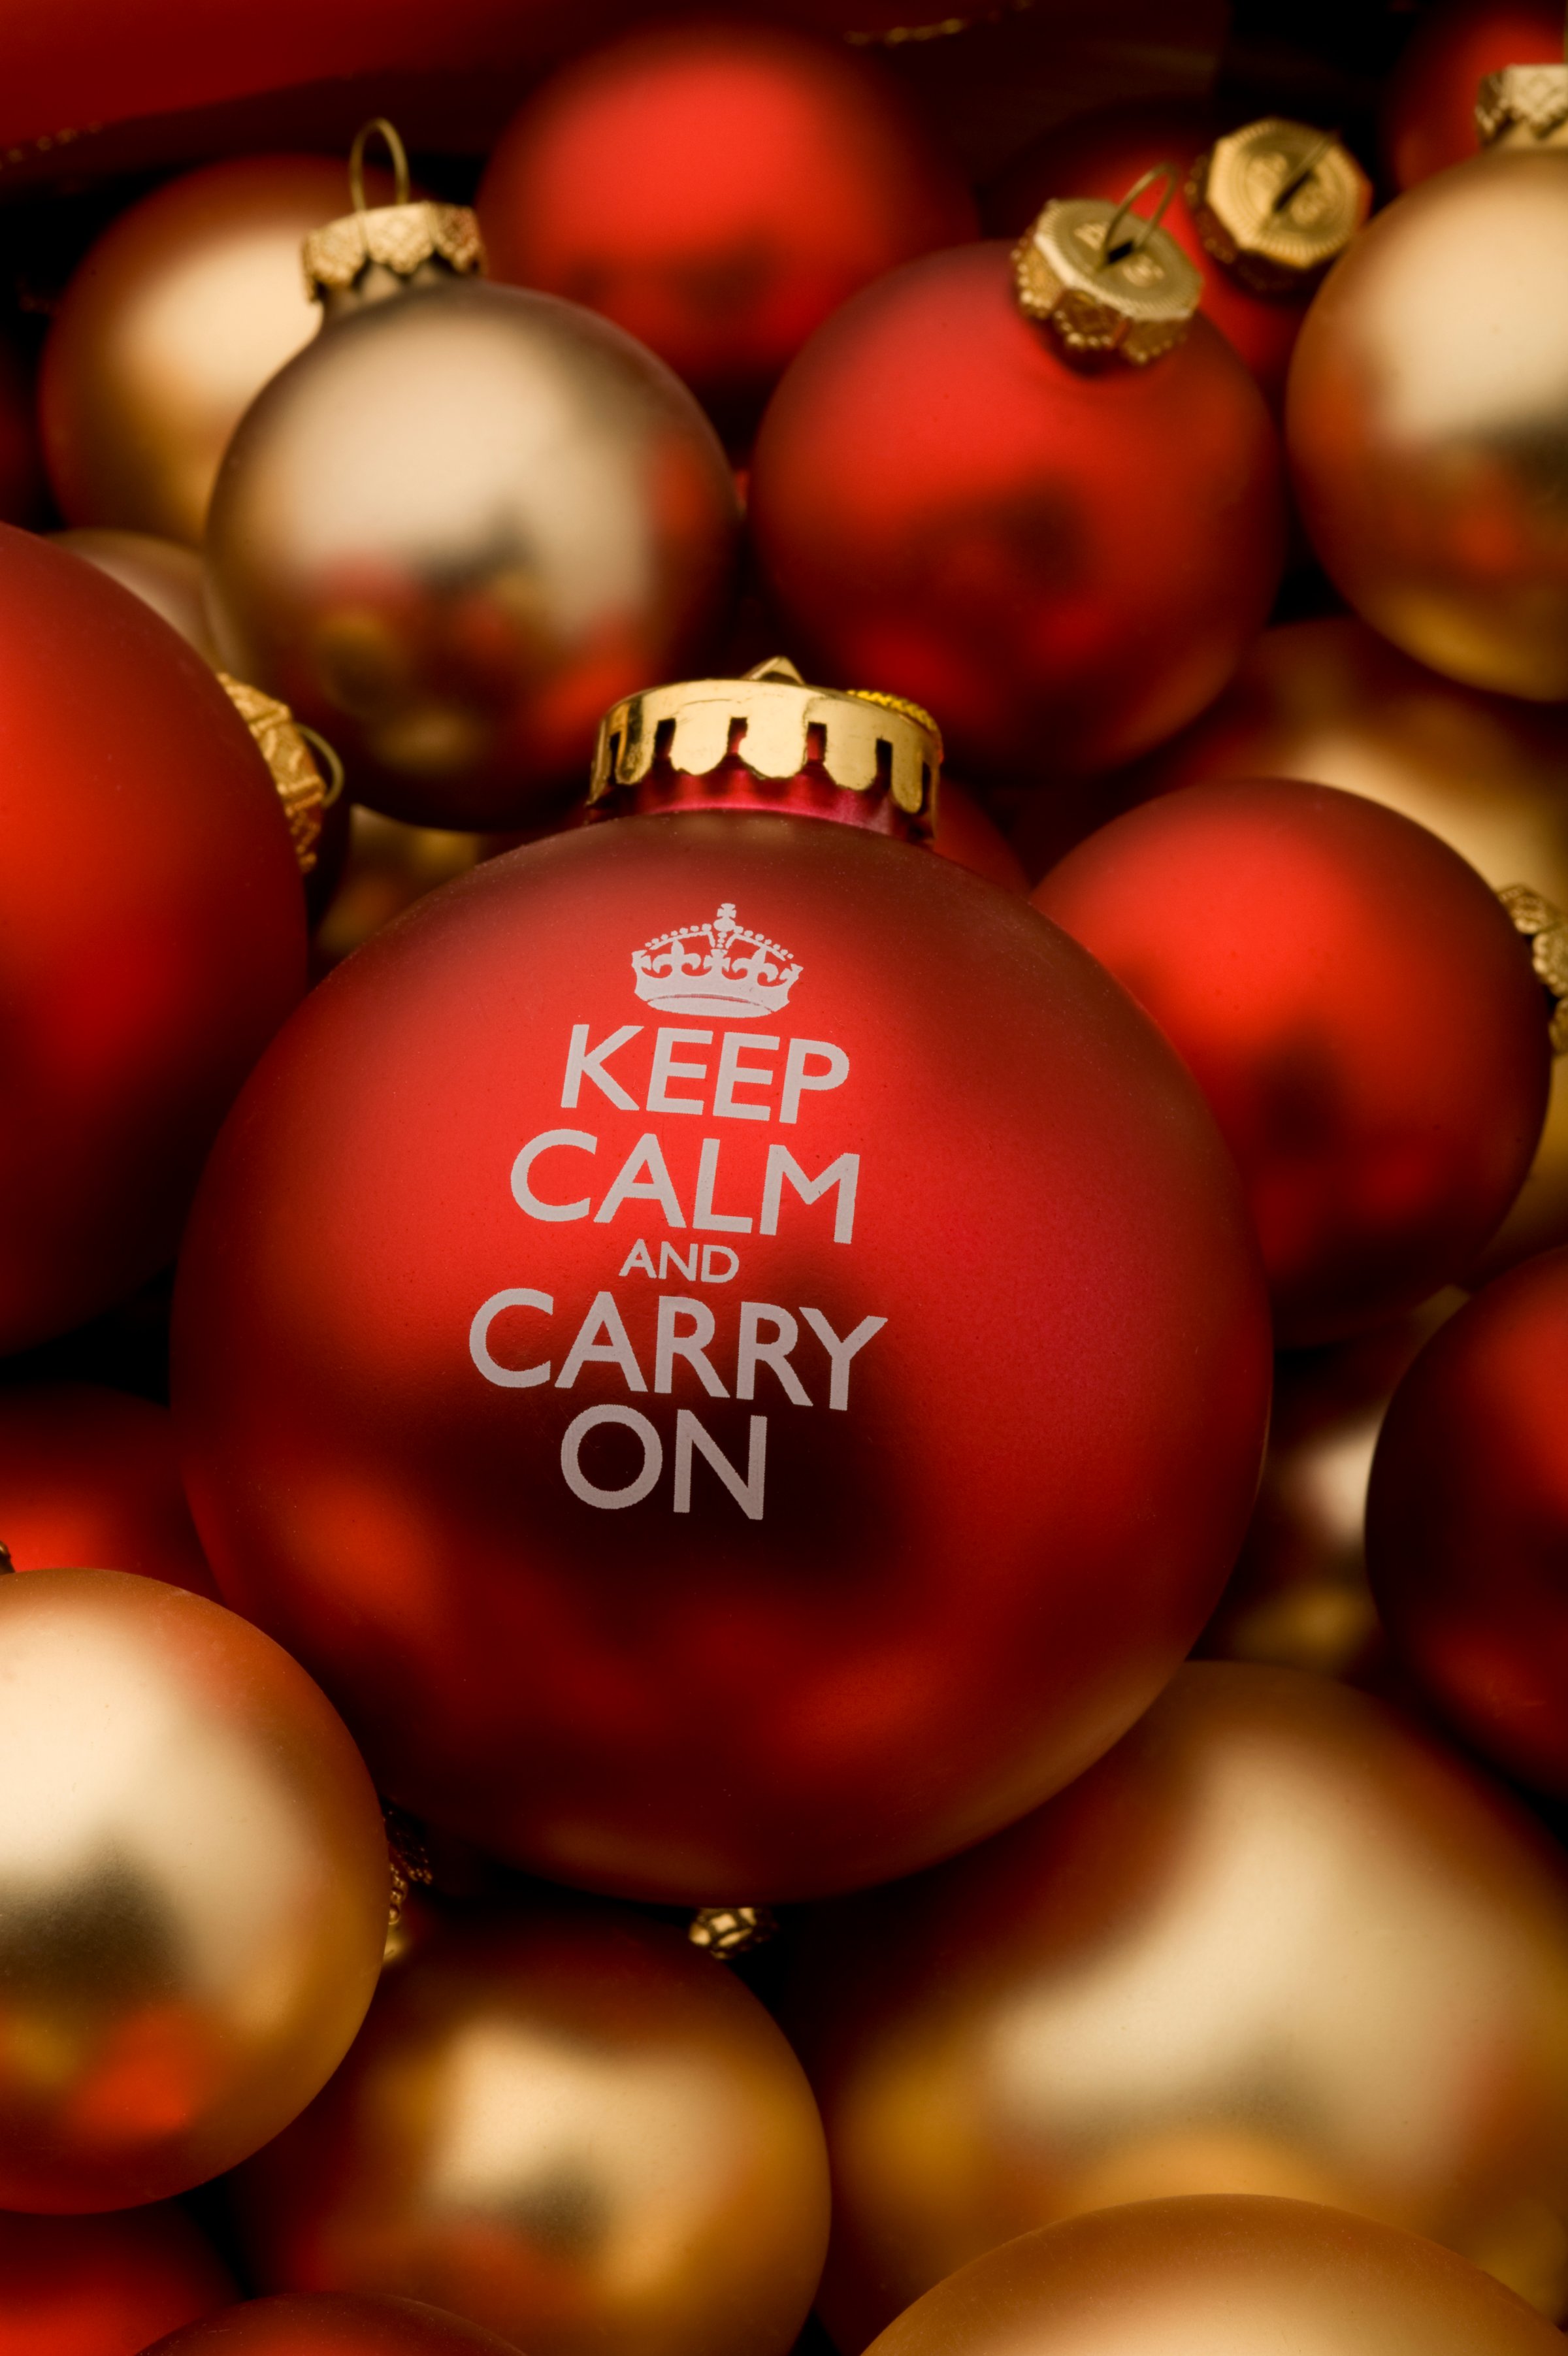 keep-calm-carry-on-ornament